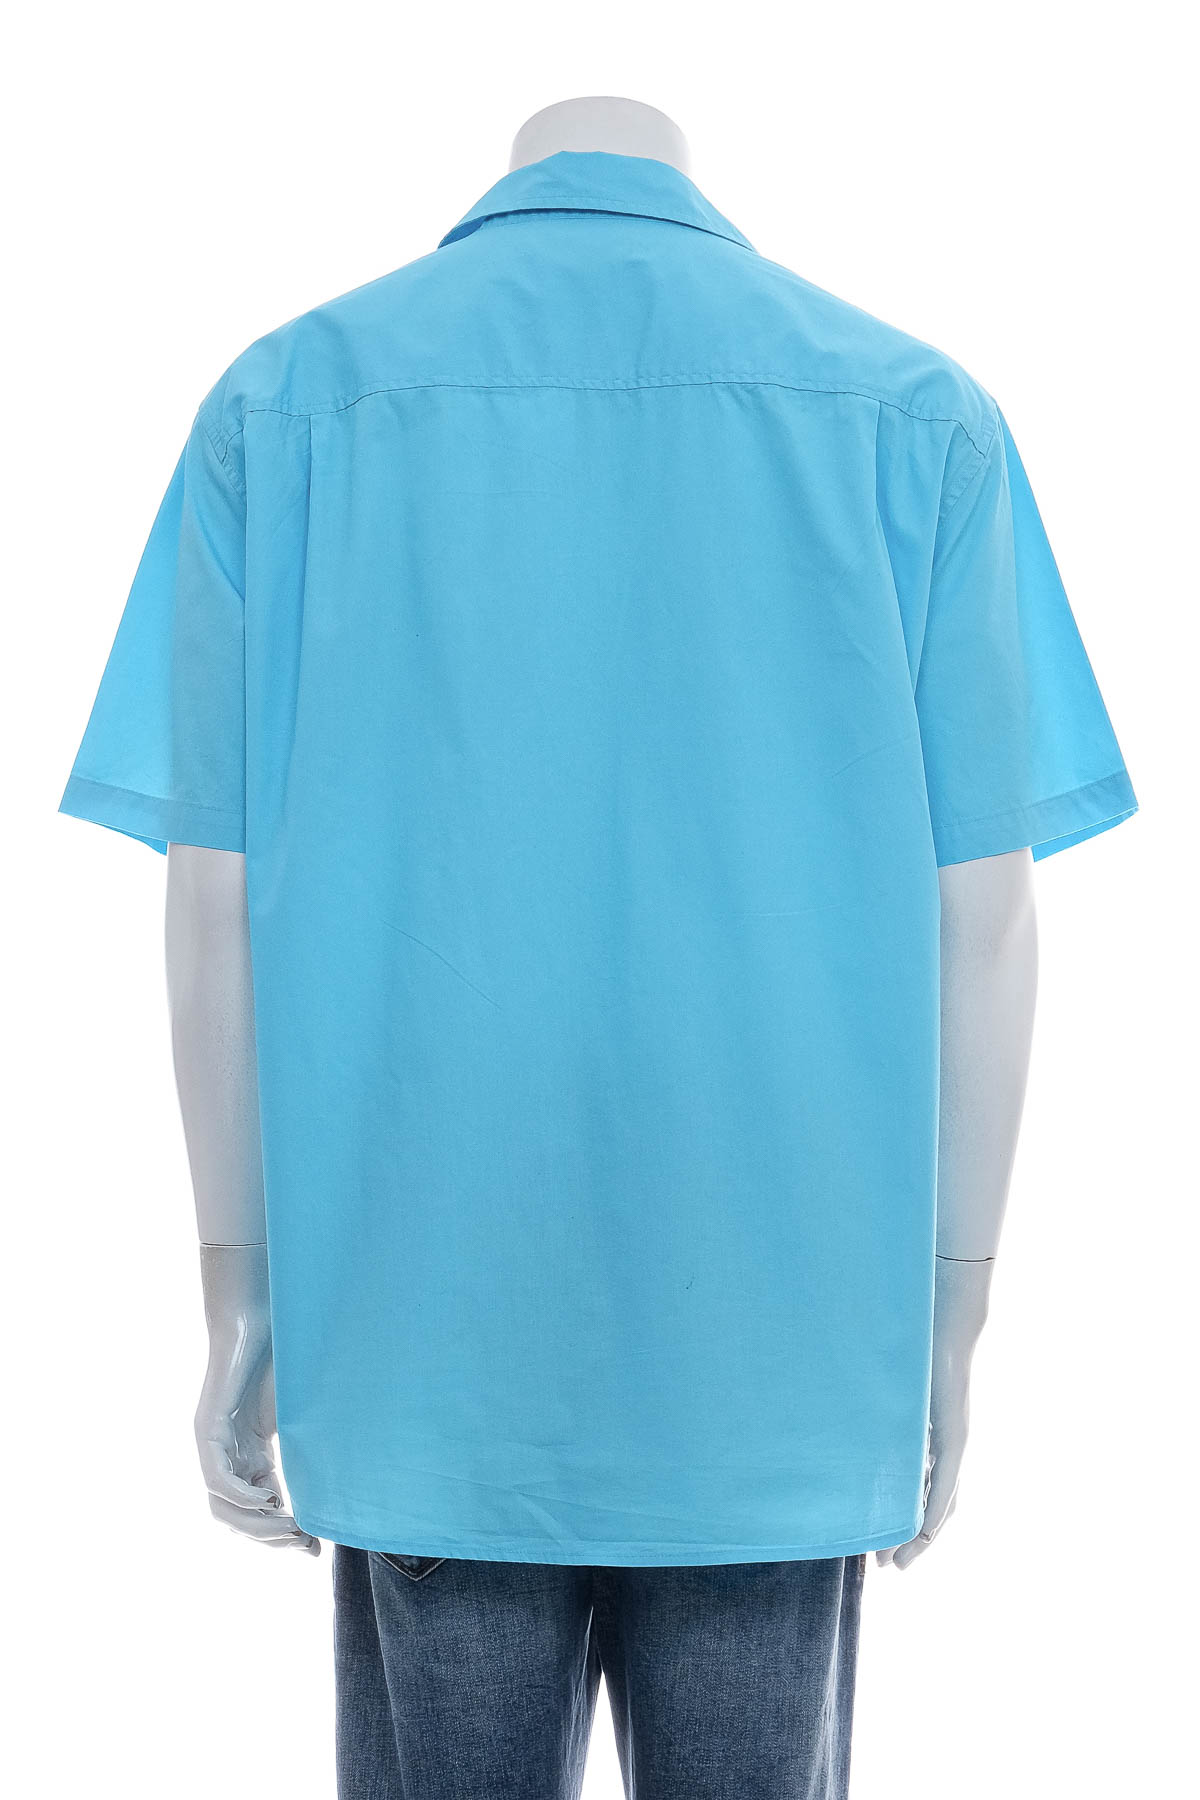 Ανδρικό πουκάμισο - ATLAS for MEN - 1